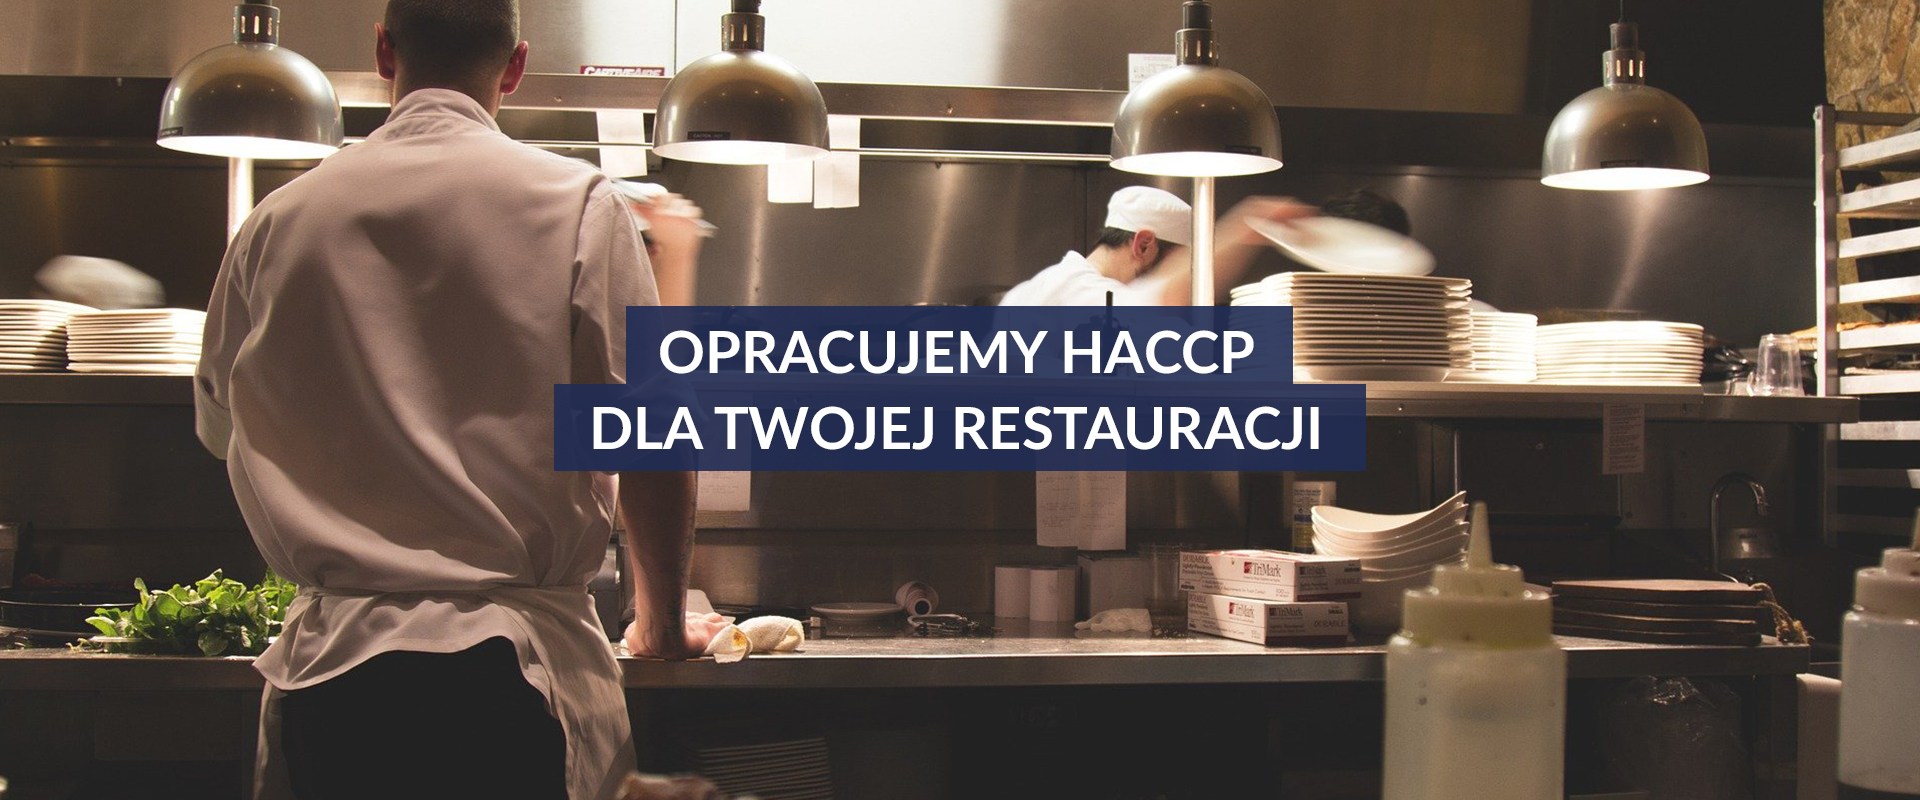 haccp-dla-restauracji2